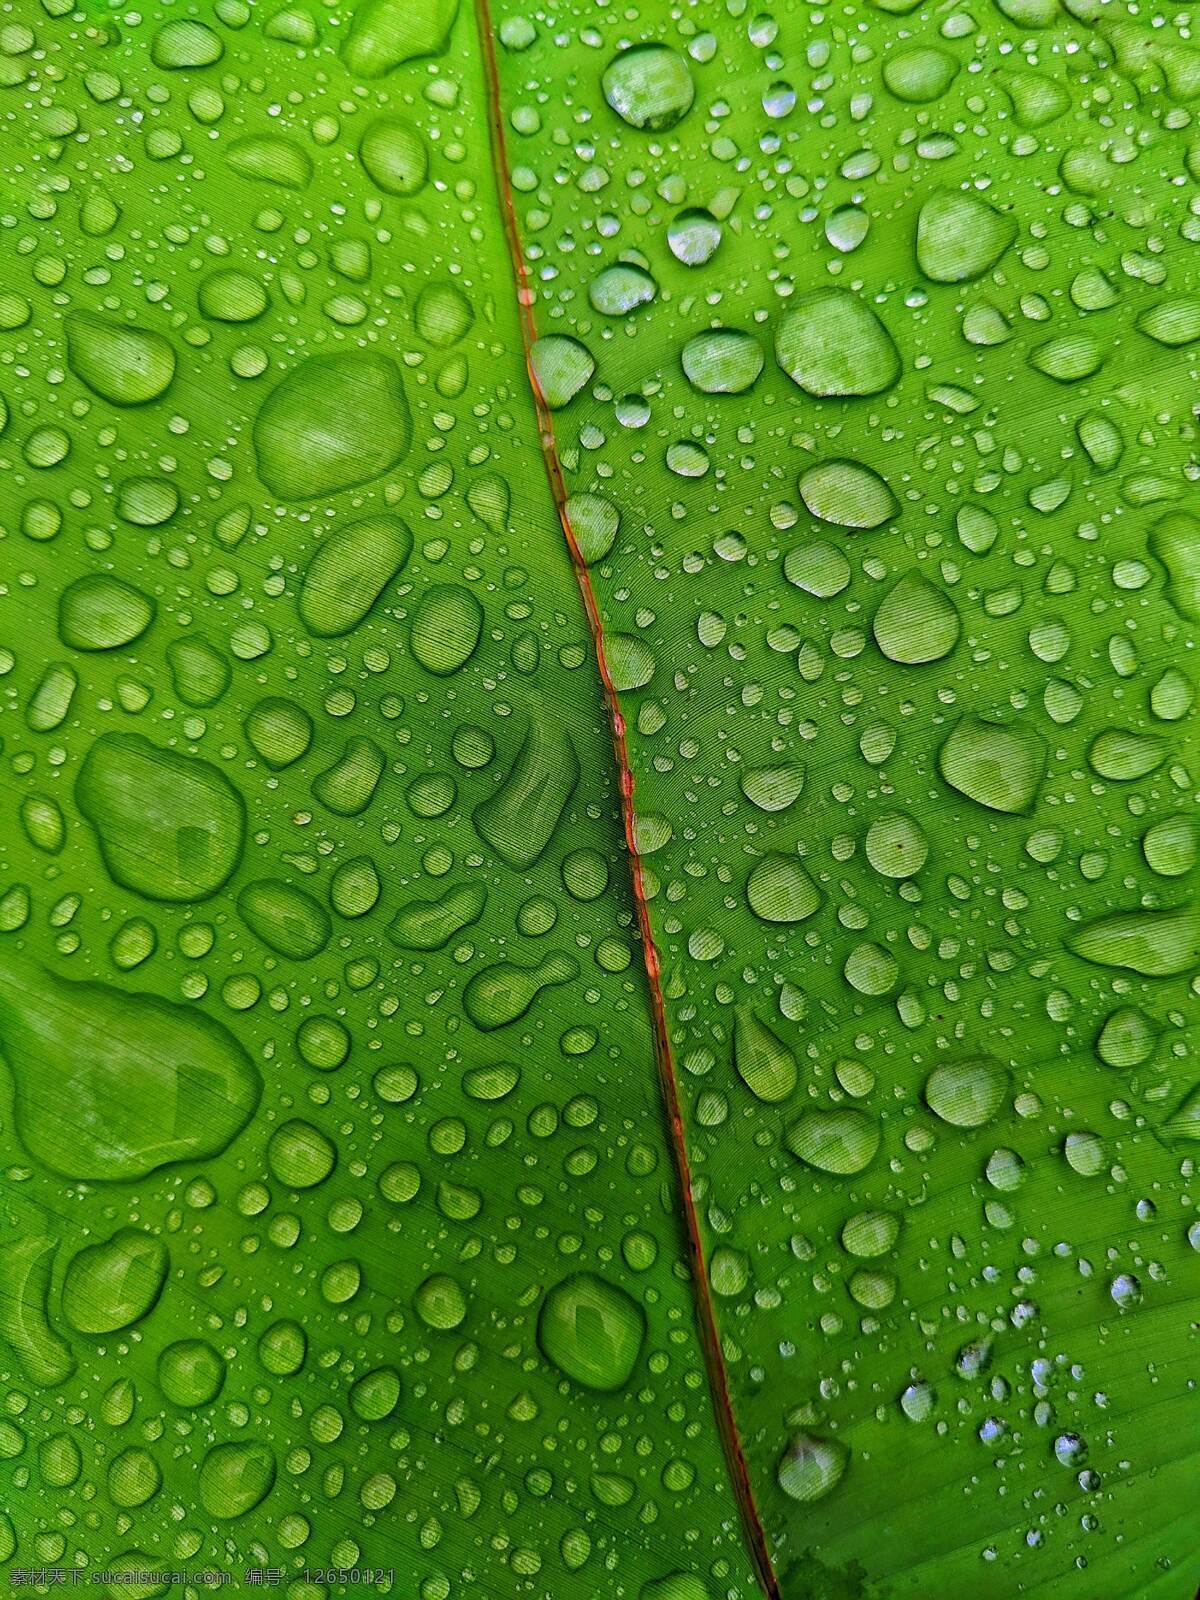 水滴绿叶图片 水珠叶 自然 绿色 植物 春天 灌木 绿叶 水滴 雨水 水珠 生态环境 草本植物 小雨 雨季 天气 自然景观 自然风景